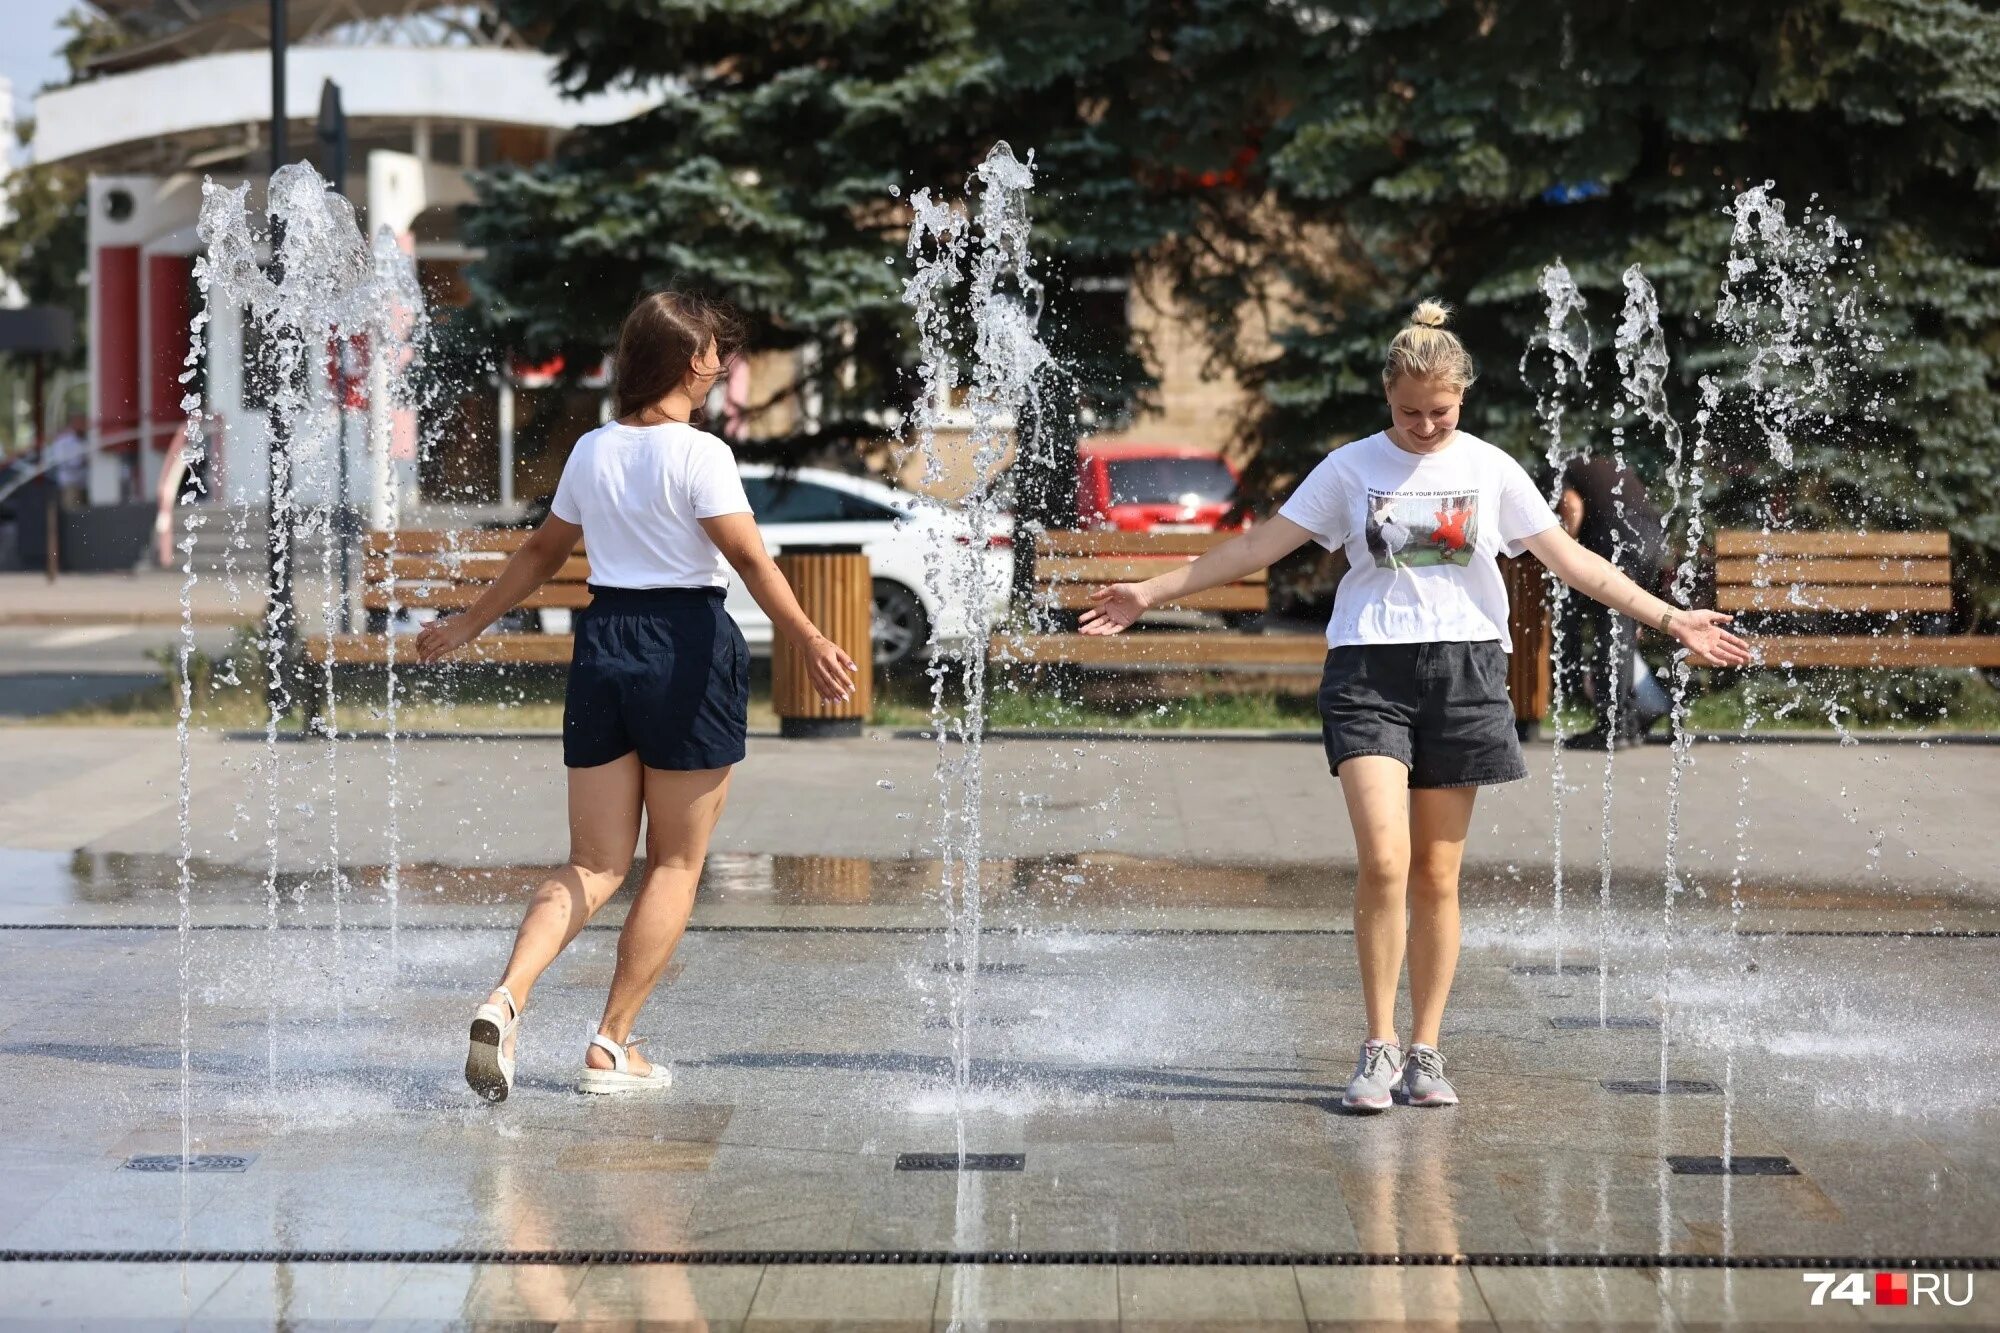 Жара сильно потею. Жара в городе. Девушки купаются в фонтане. Девочки 12 лет на улице. Лето жара.